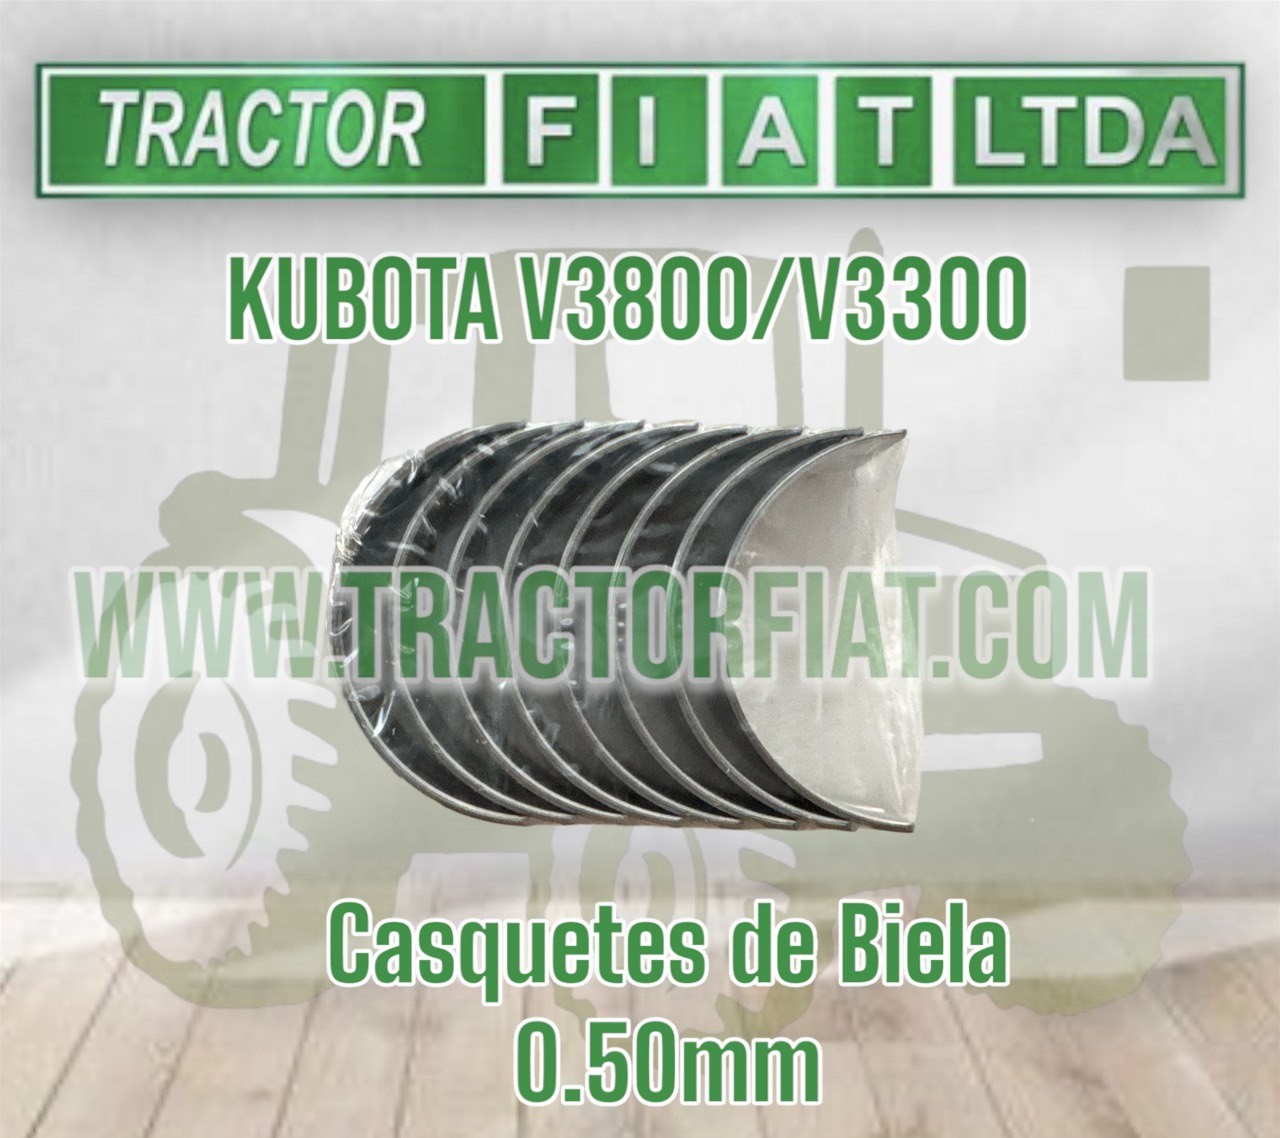 CASQUETES DE BIELA 0.50MM-MOTOR KUBOTA V3800/V3300